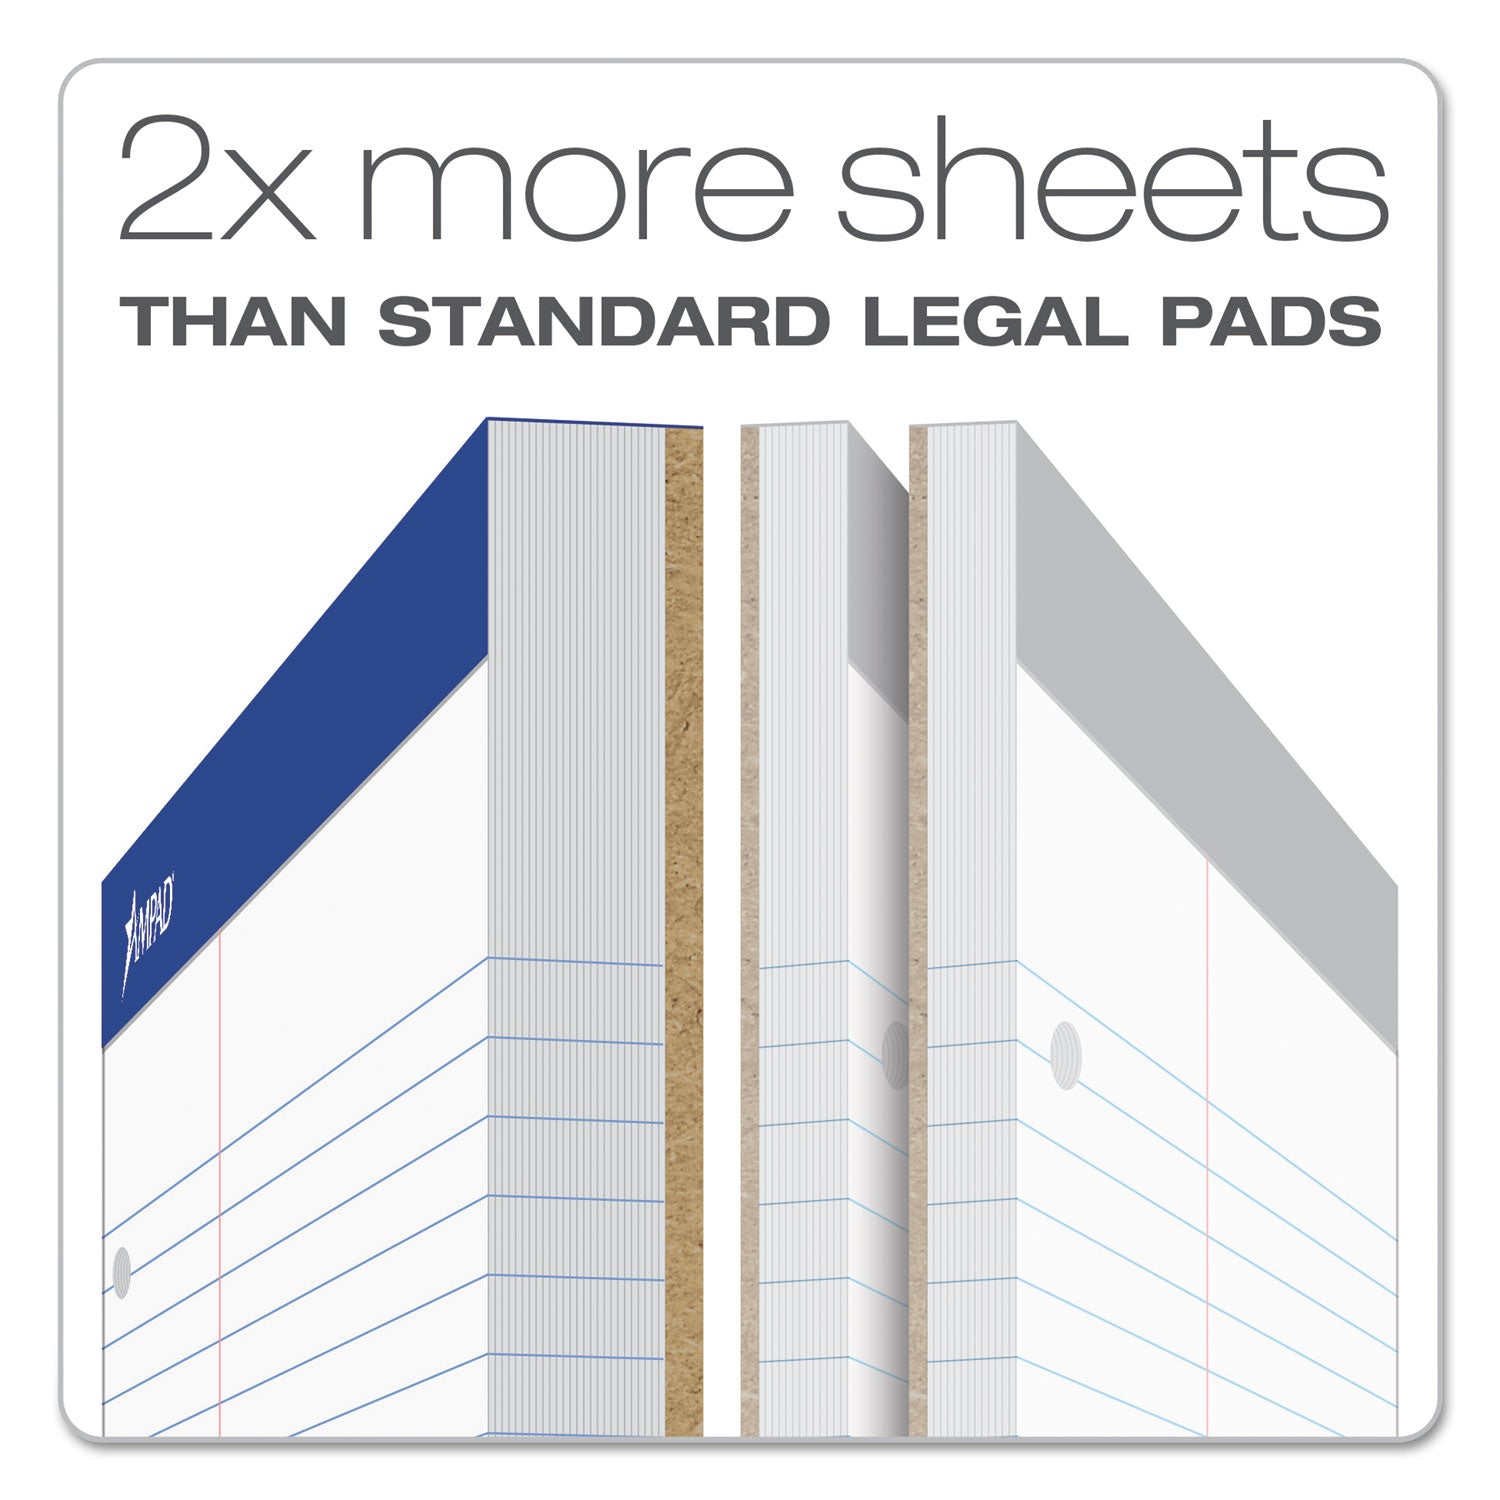 Double Sheet Pads, Narrow Rule, 100 White 8.5 x 11.75 Sheets - 